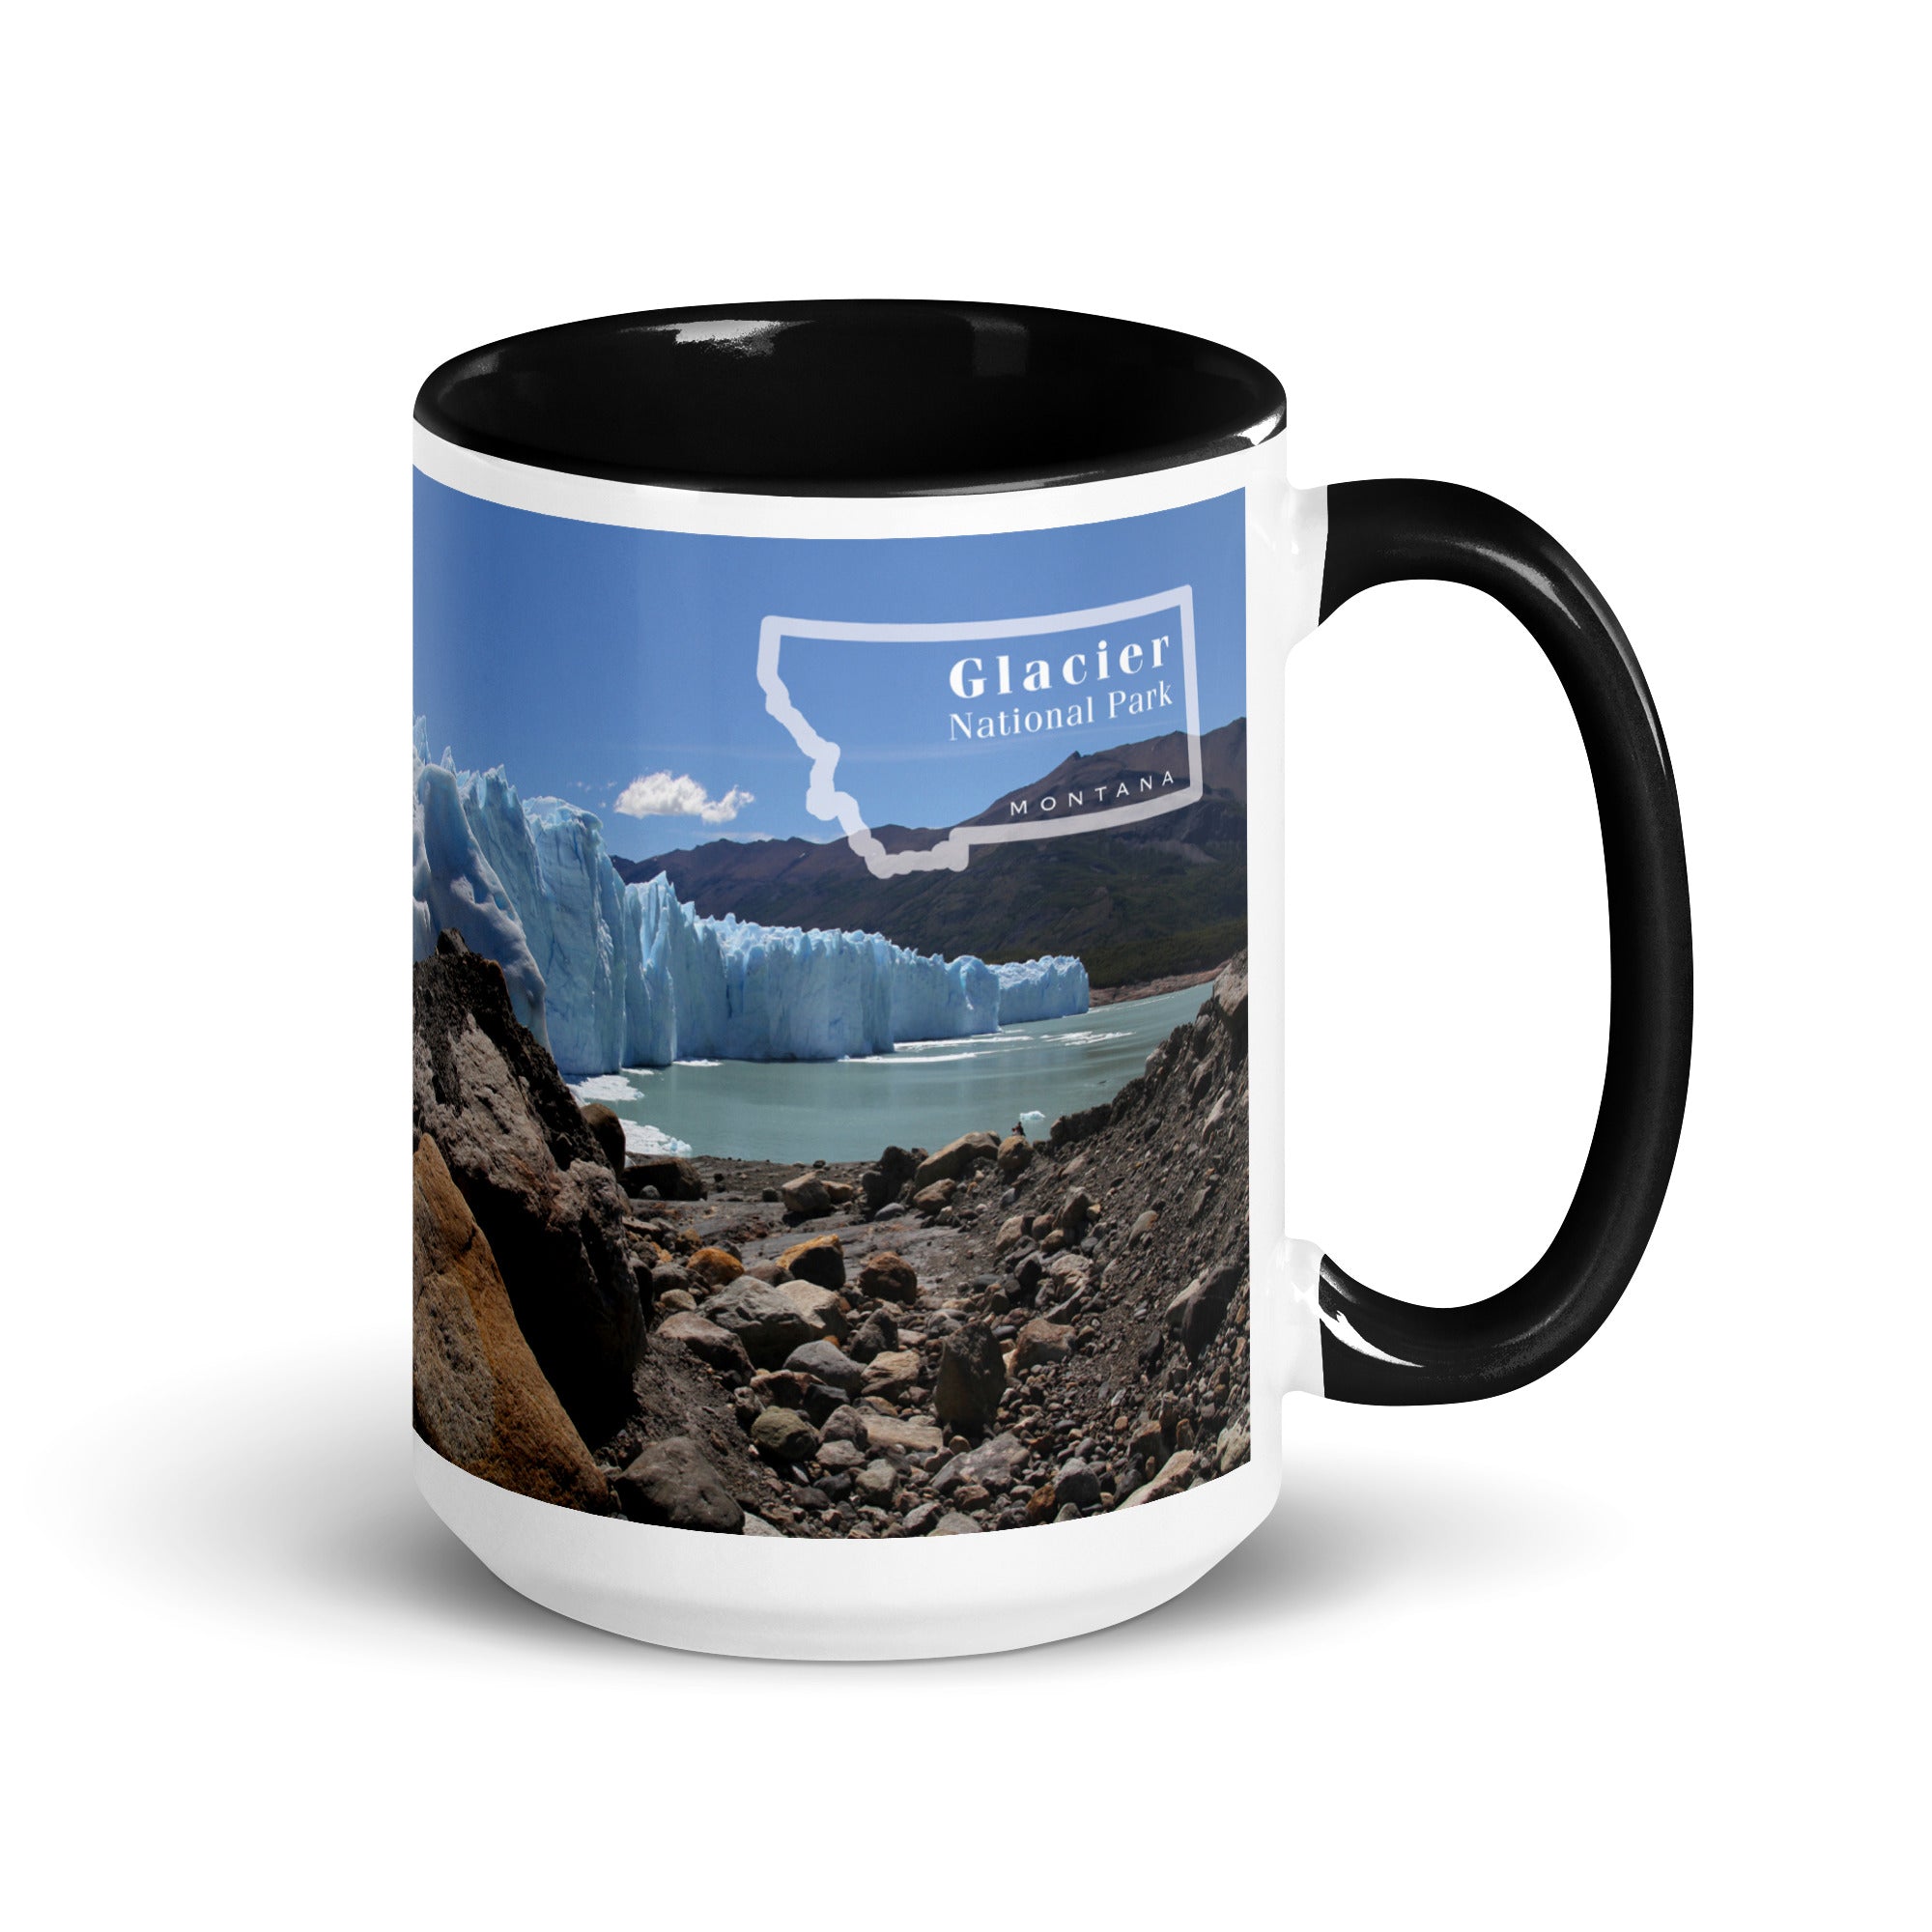 Glacier National Park Mug with Black Inside